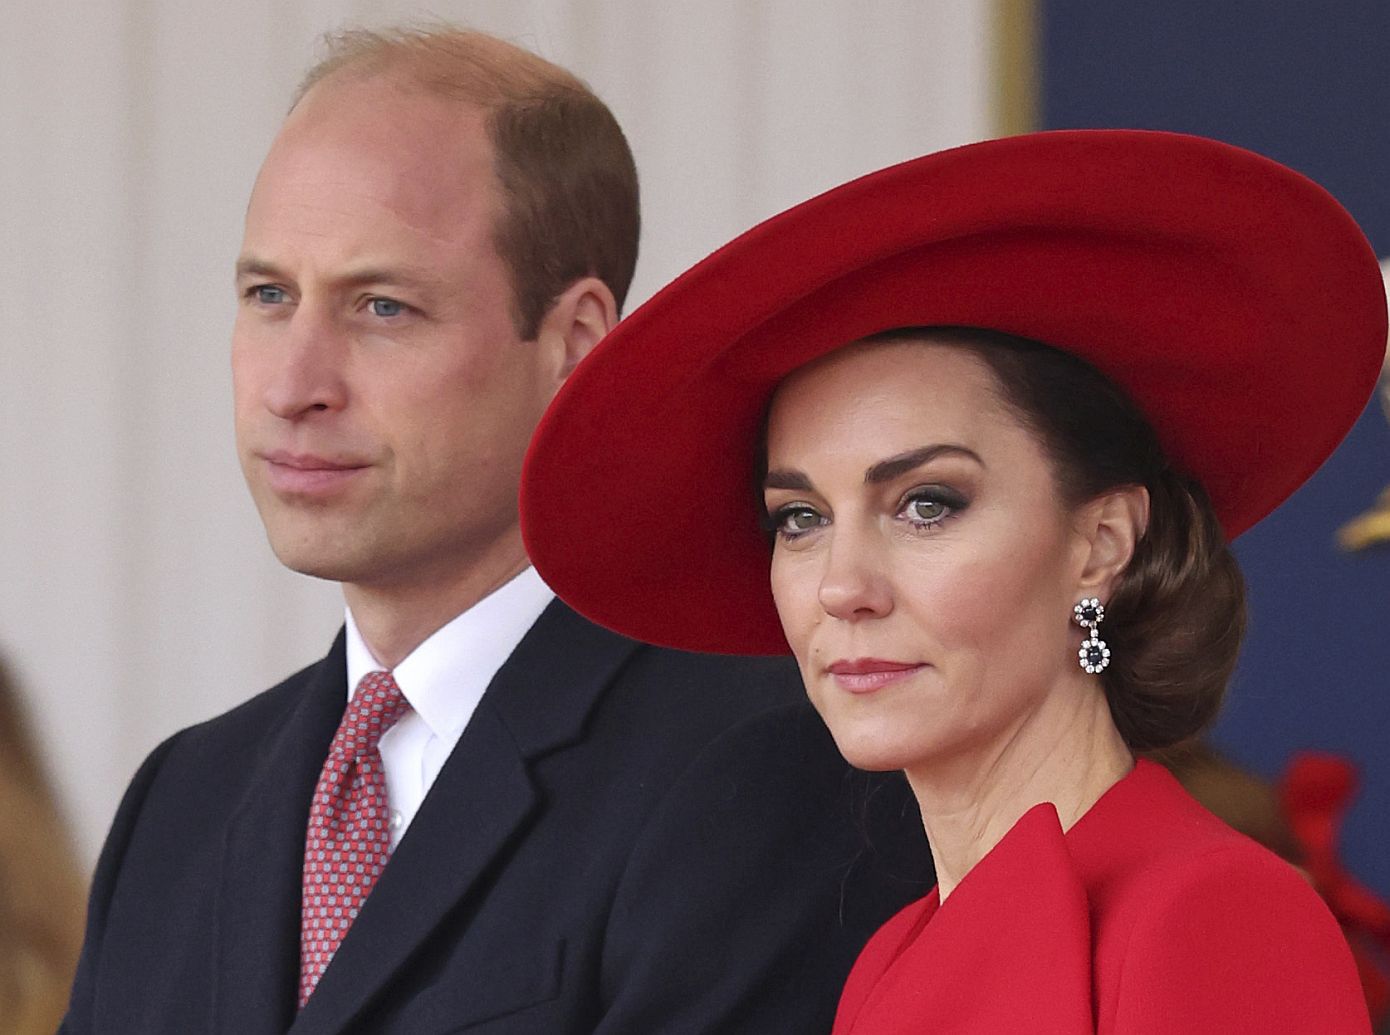 Η Κέιτ Μίντλετον και ο πρίγκιπας Ουίλιαμ δηλώνουν σοκαρισμένοι και λυπημένοι από τα φρικτά γεγονότα στο Σίδνεϊ